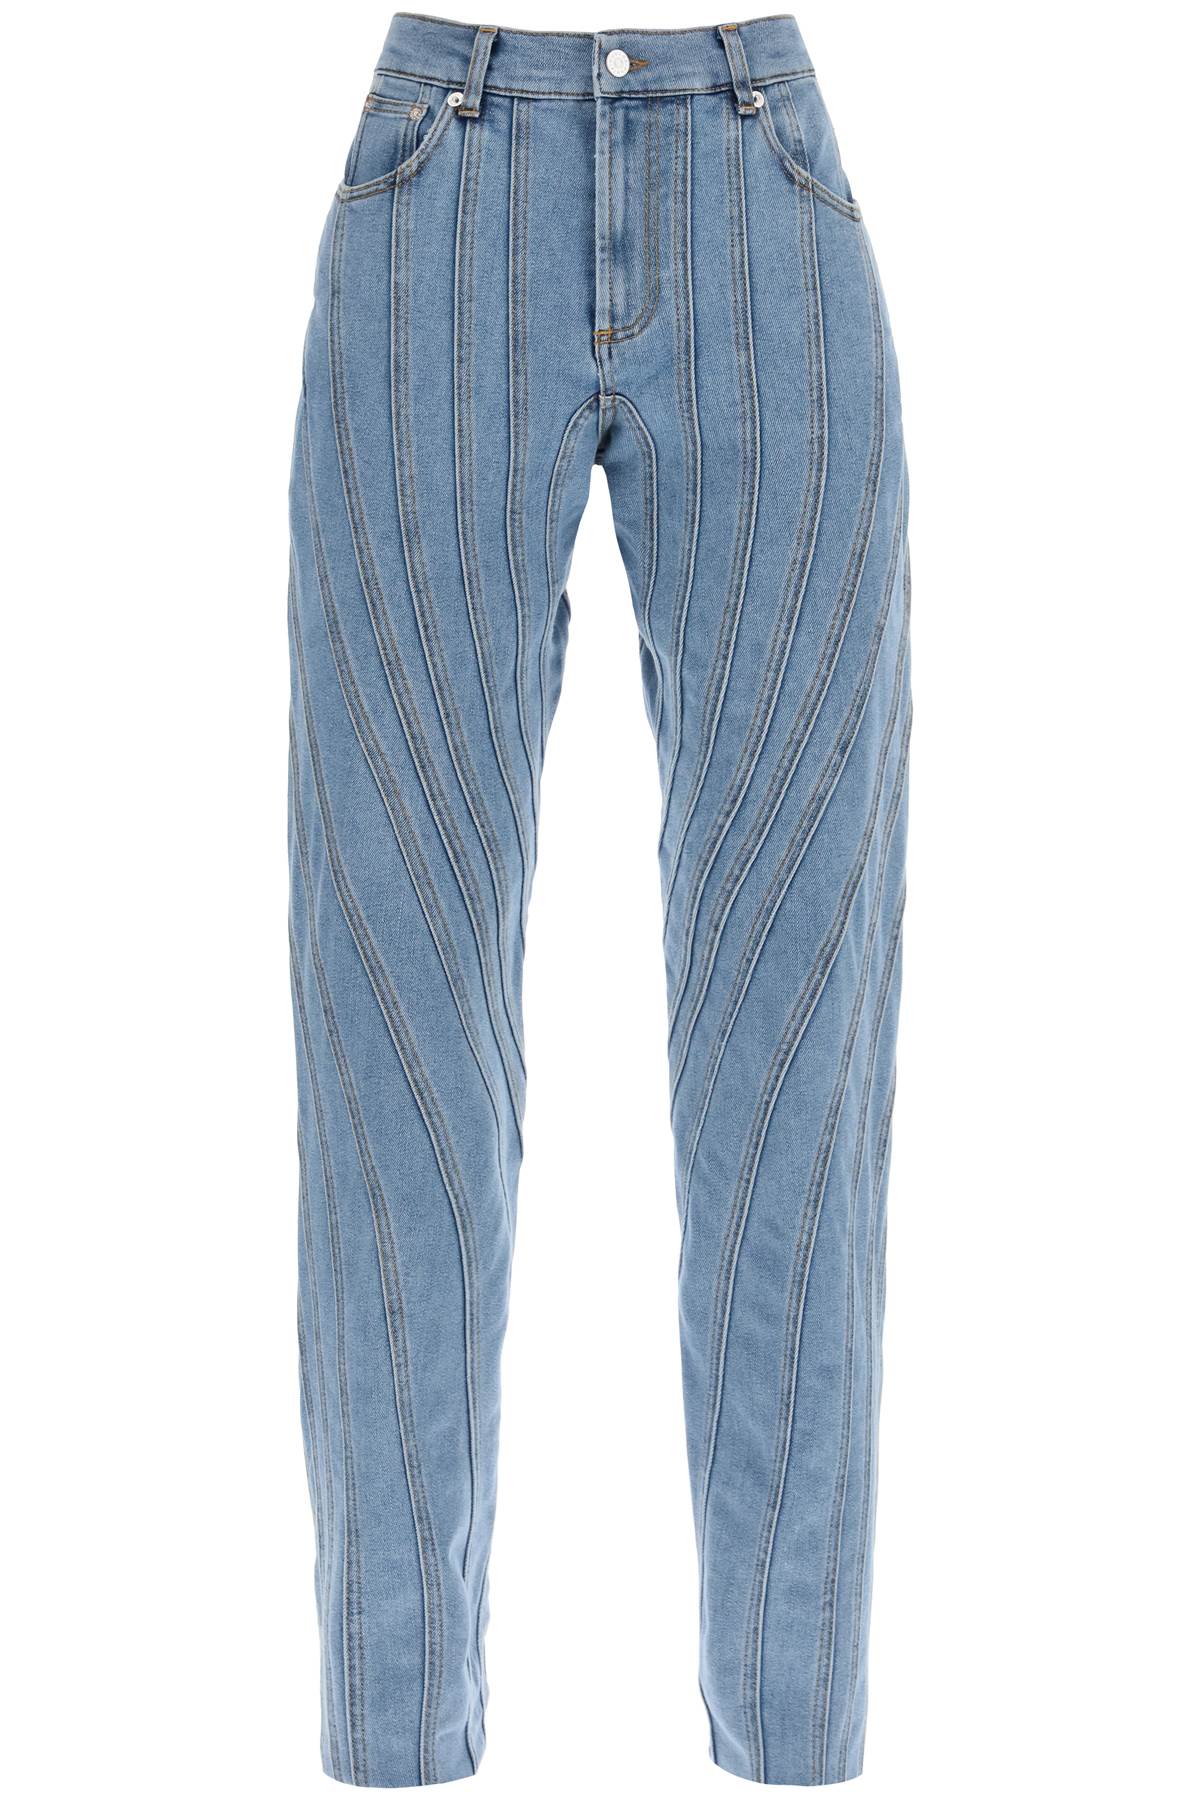 Mugler spiral baggy jeans-0